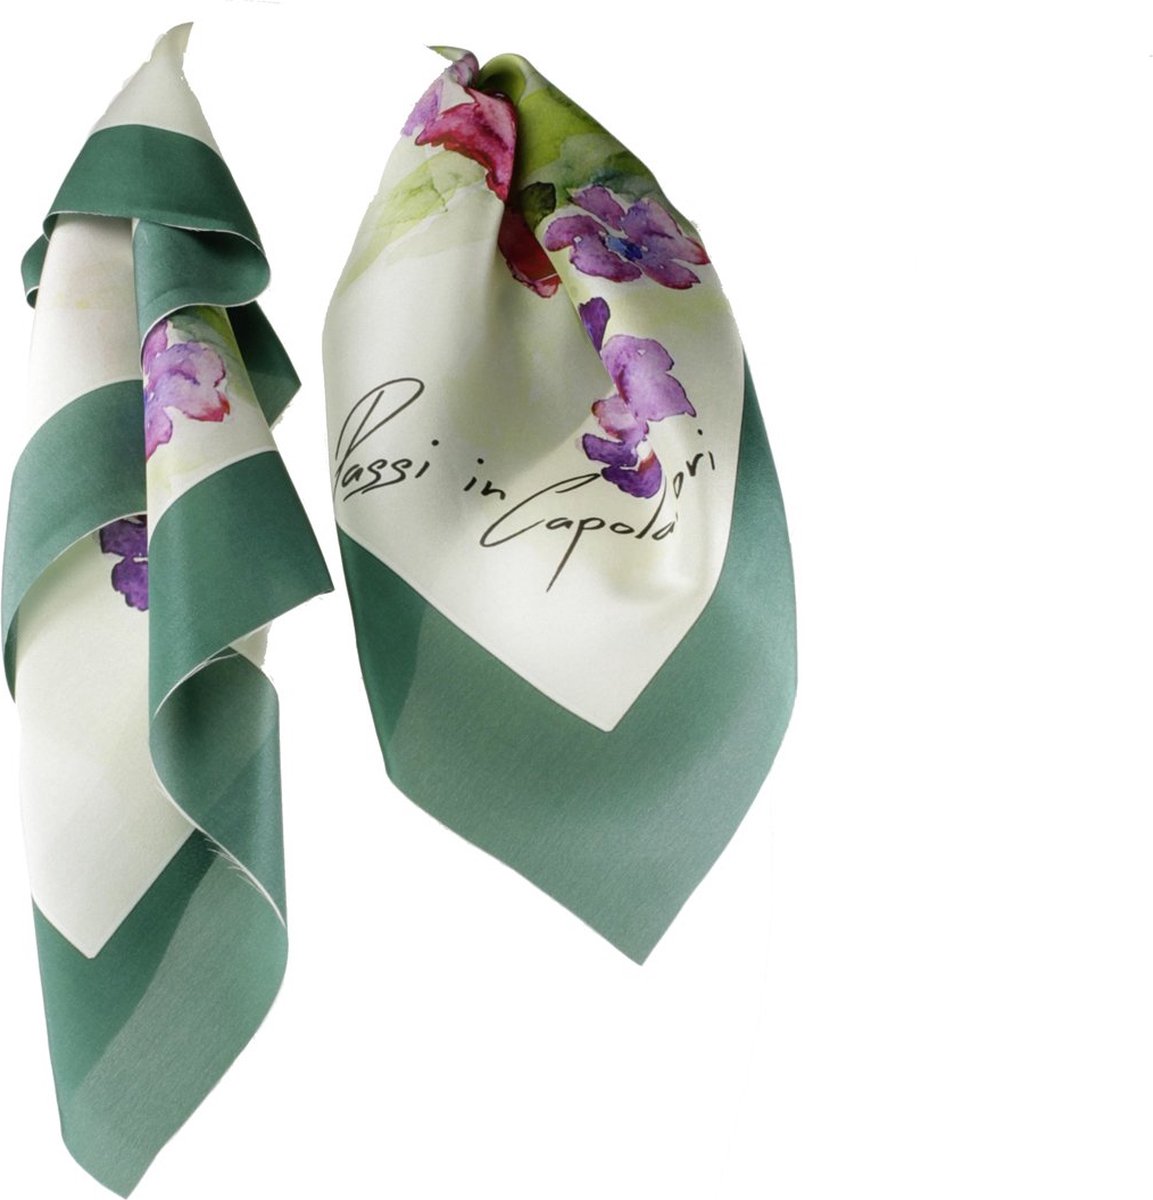 Passi in Capolavori Art sjaals Stola Design van Henny Meijer